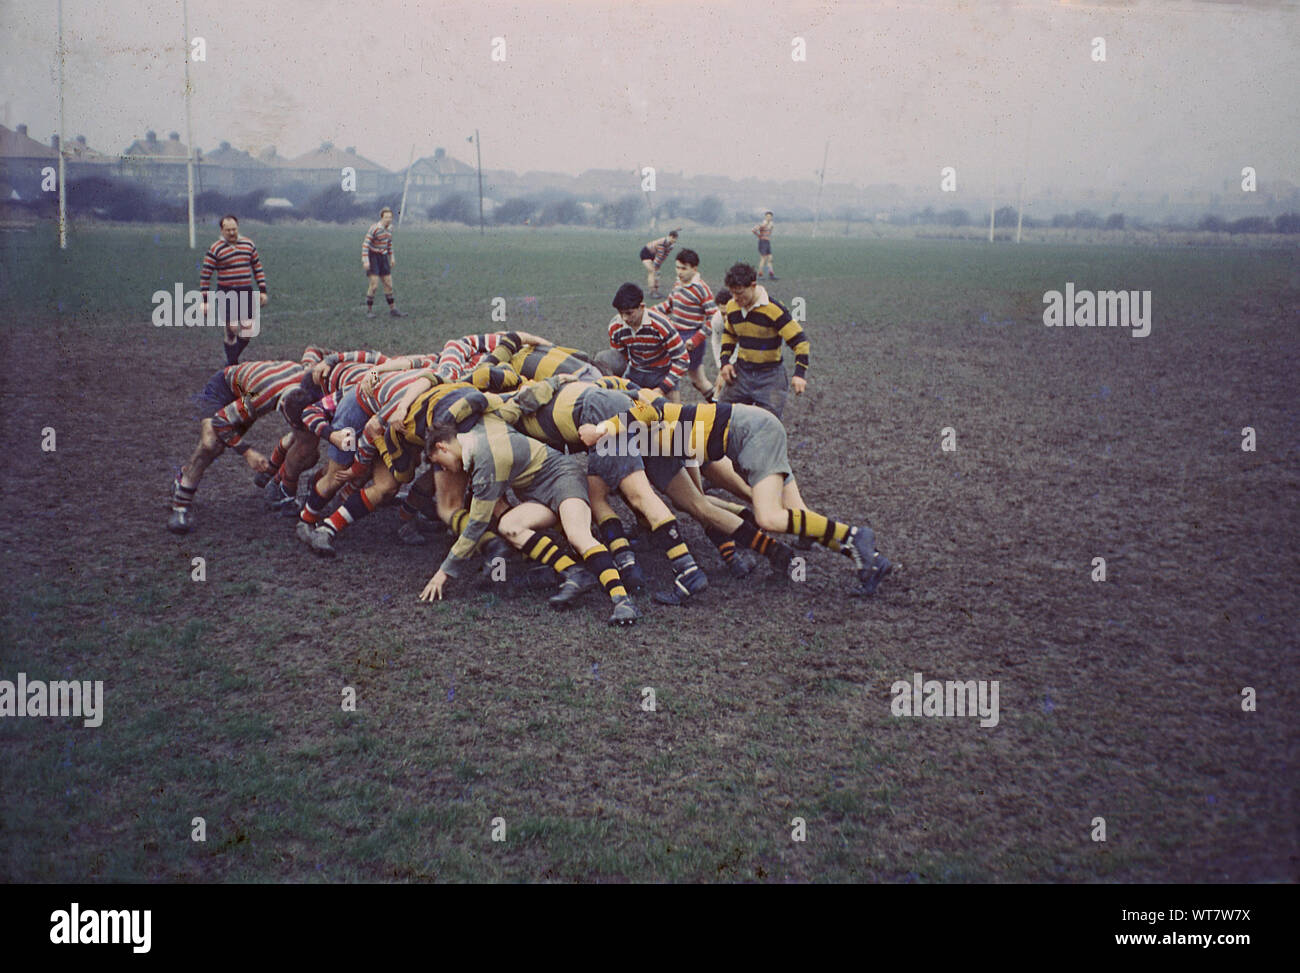 1960, historische, amateur rugby union in Wallasey, Wirral, England UK, draußen auf einer schlammigen Pitch, männliche Spieler in einem Scrum geduckt Stockfoto